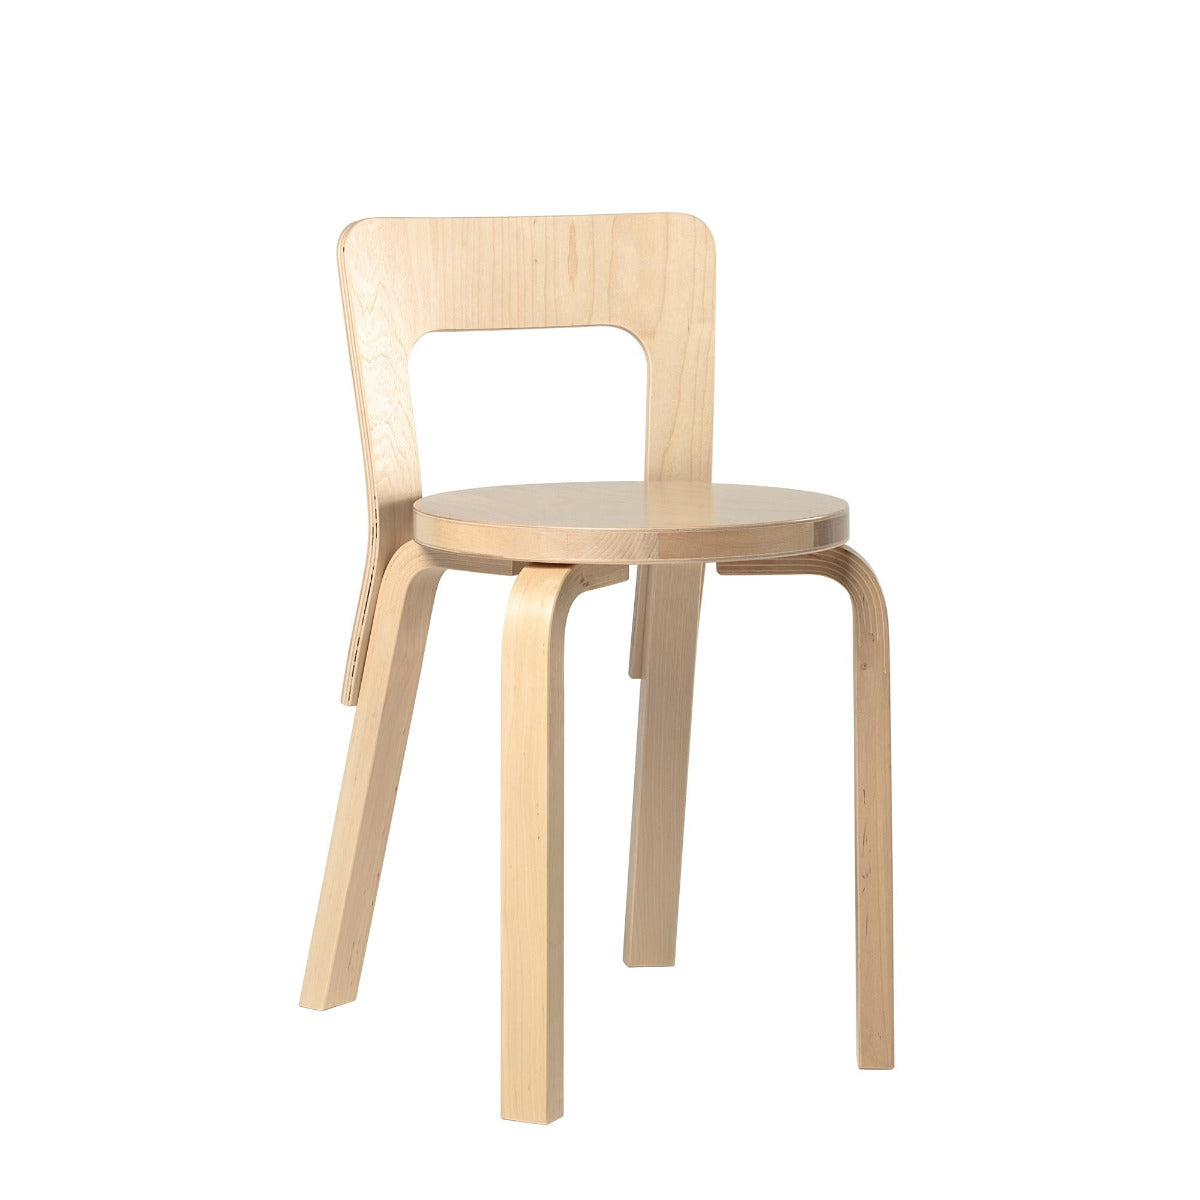 Chair 65 // Birch // Exhibition Model